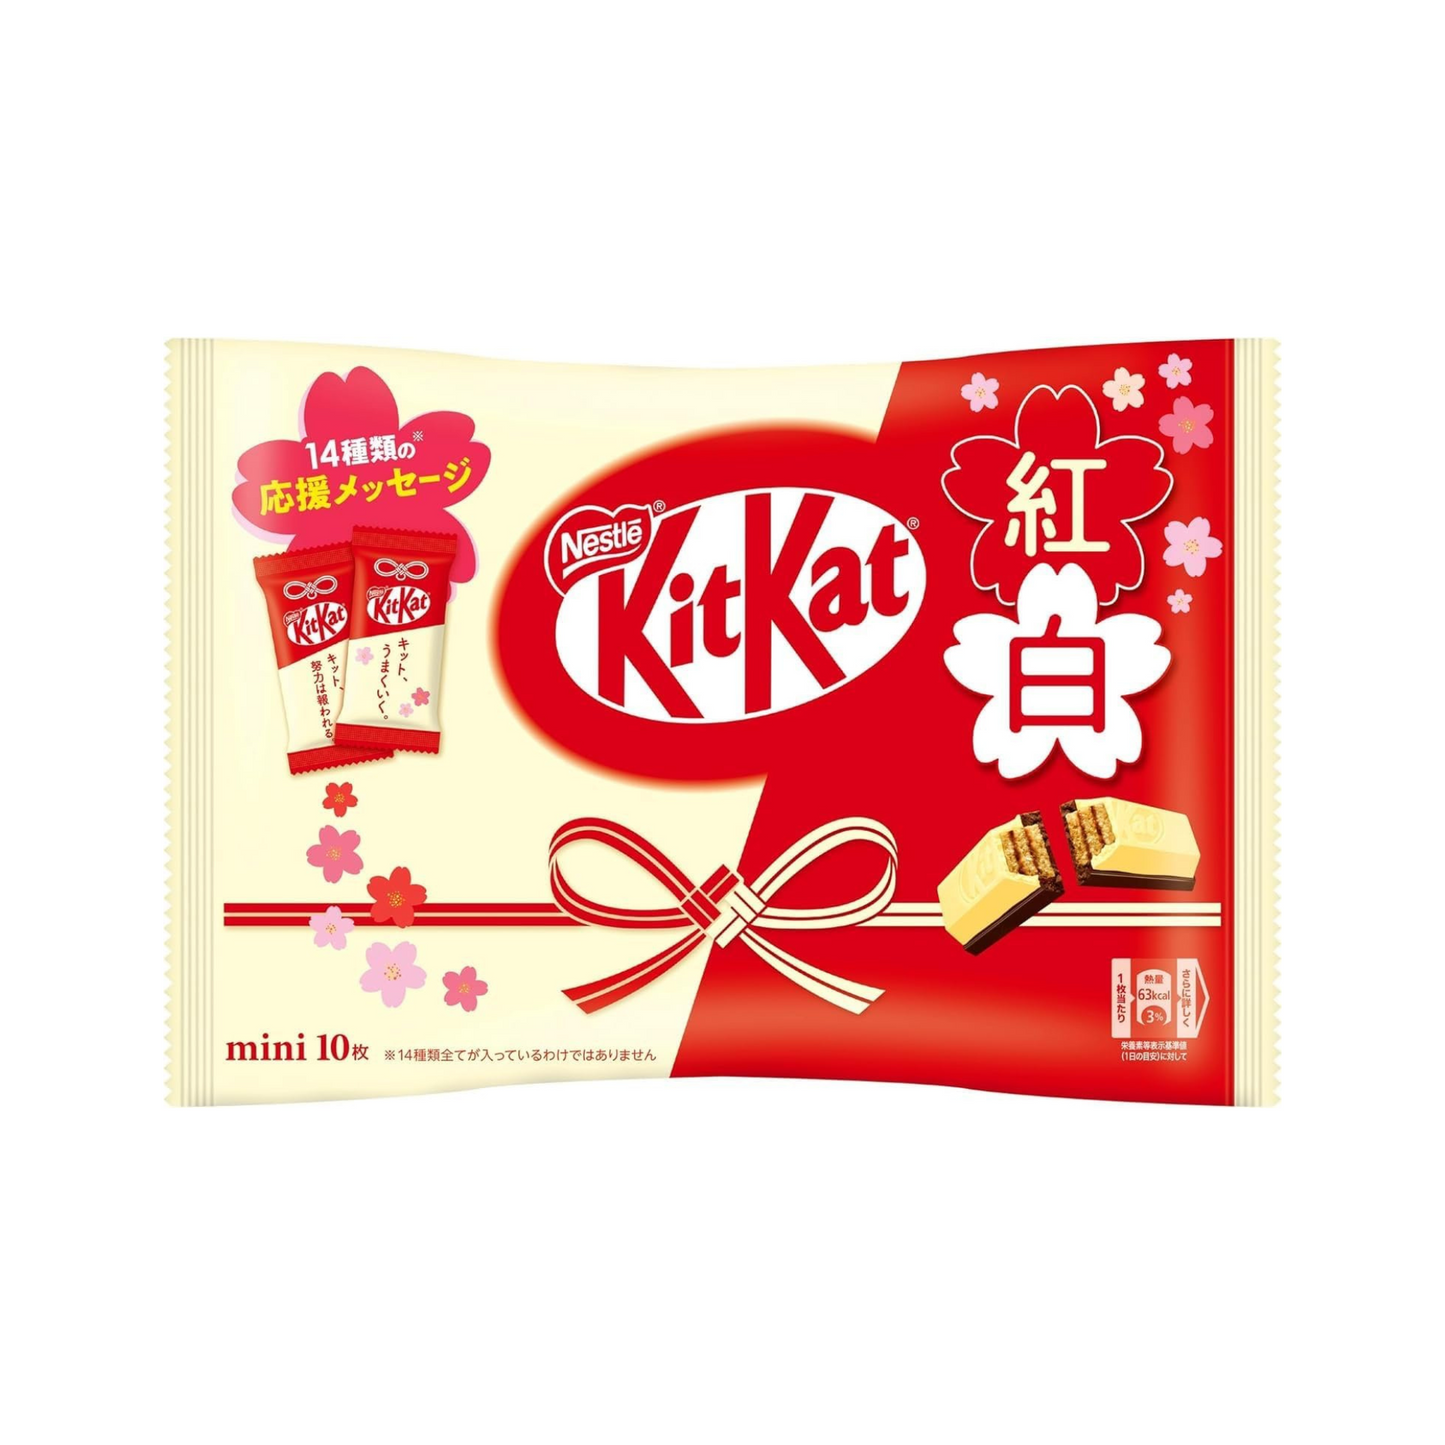 Kit Kat 2 cioccolatini (con messaggi)